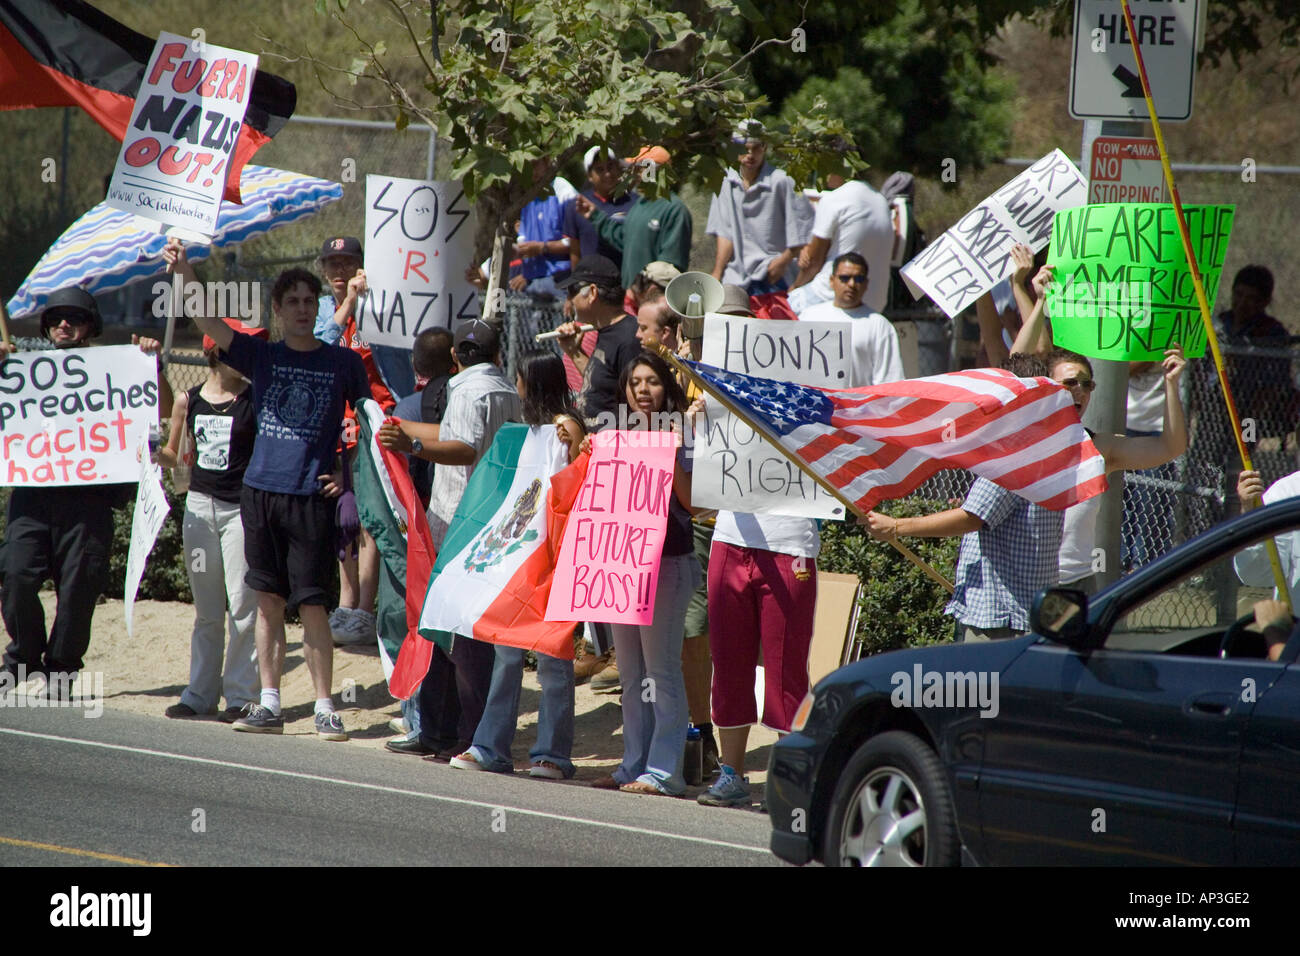 White & Hispanic demonstrators minority day laborers at a hiring center in Laguna Beach, CA. Stock Photo